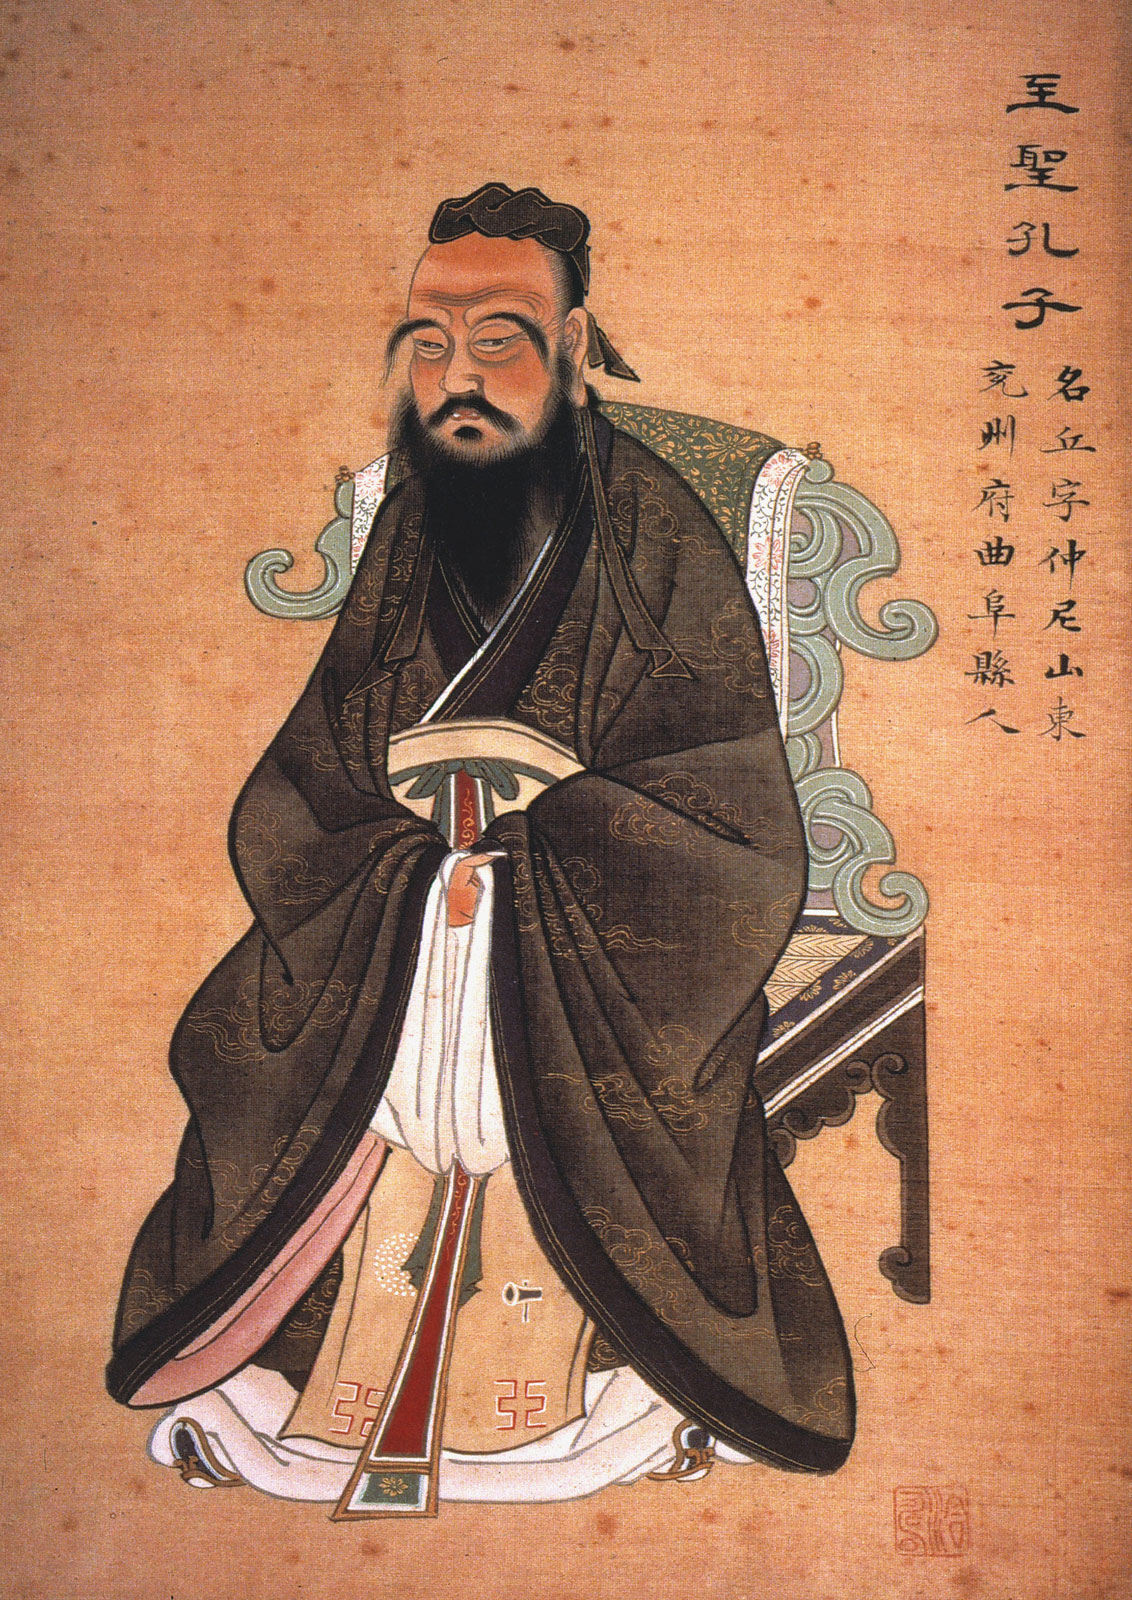 Portrait de Confucius (environ 550 - environ 480 avant notre ère). Gouache sur papier, vers 1770. Auteur inconnu. © Wikimedia Commons